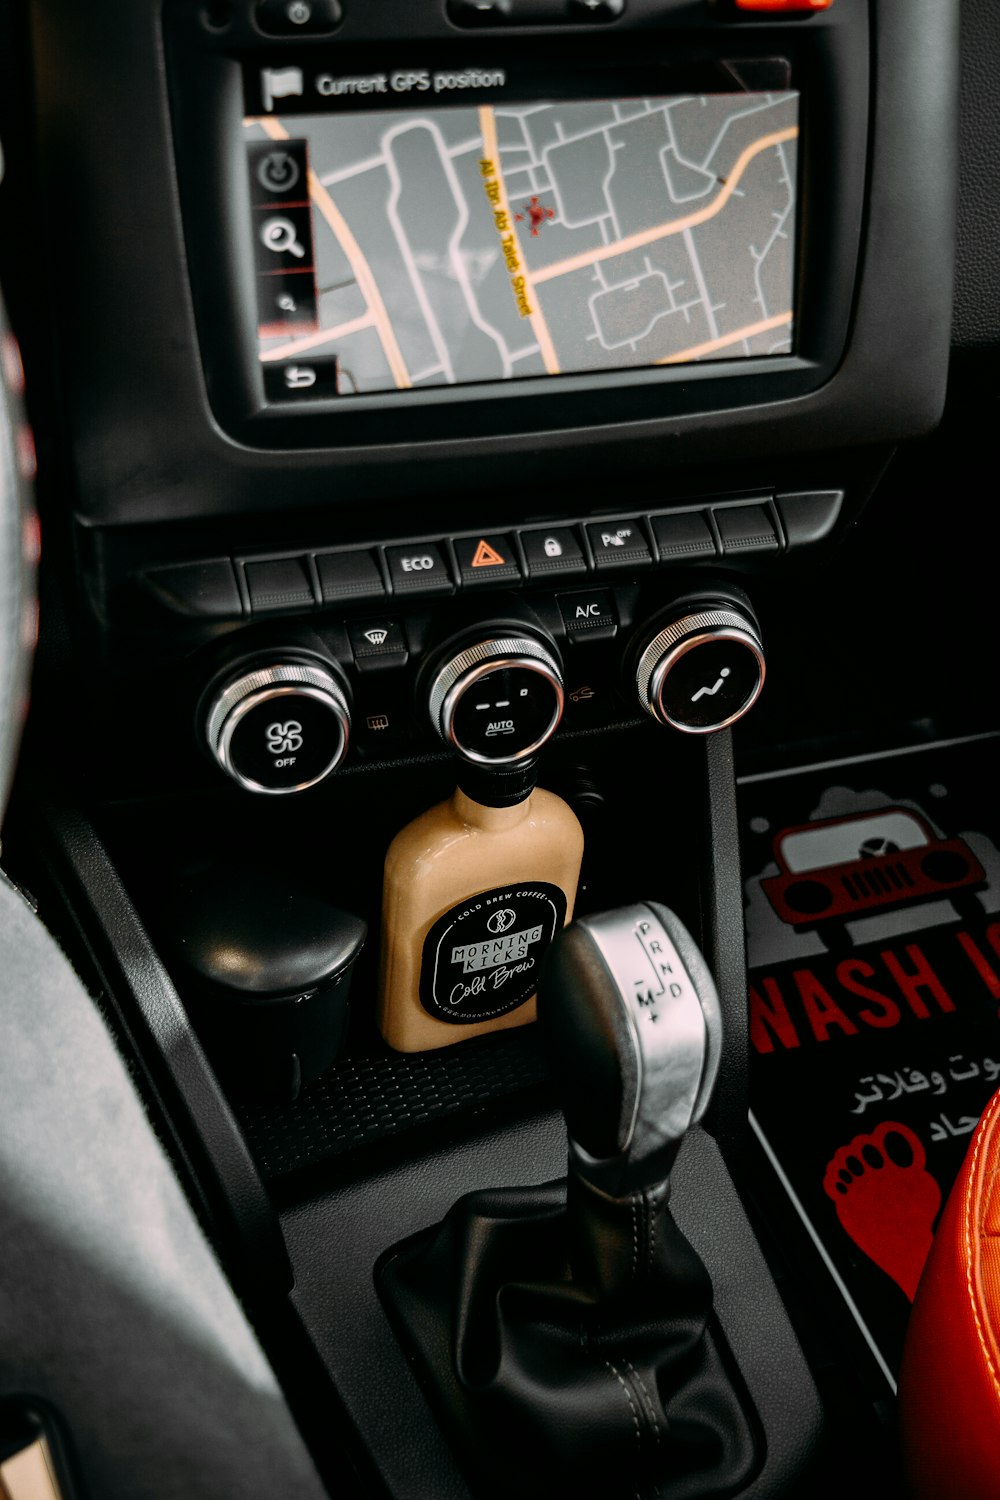  Wanneer u een voertuig. persoon of object wilt beveiligen is een GPS tracker (Global Positioning System) het middel om direct de locatie door te geven  thumbnail